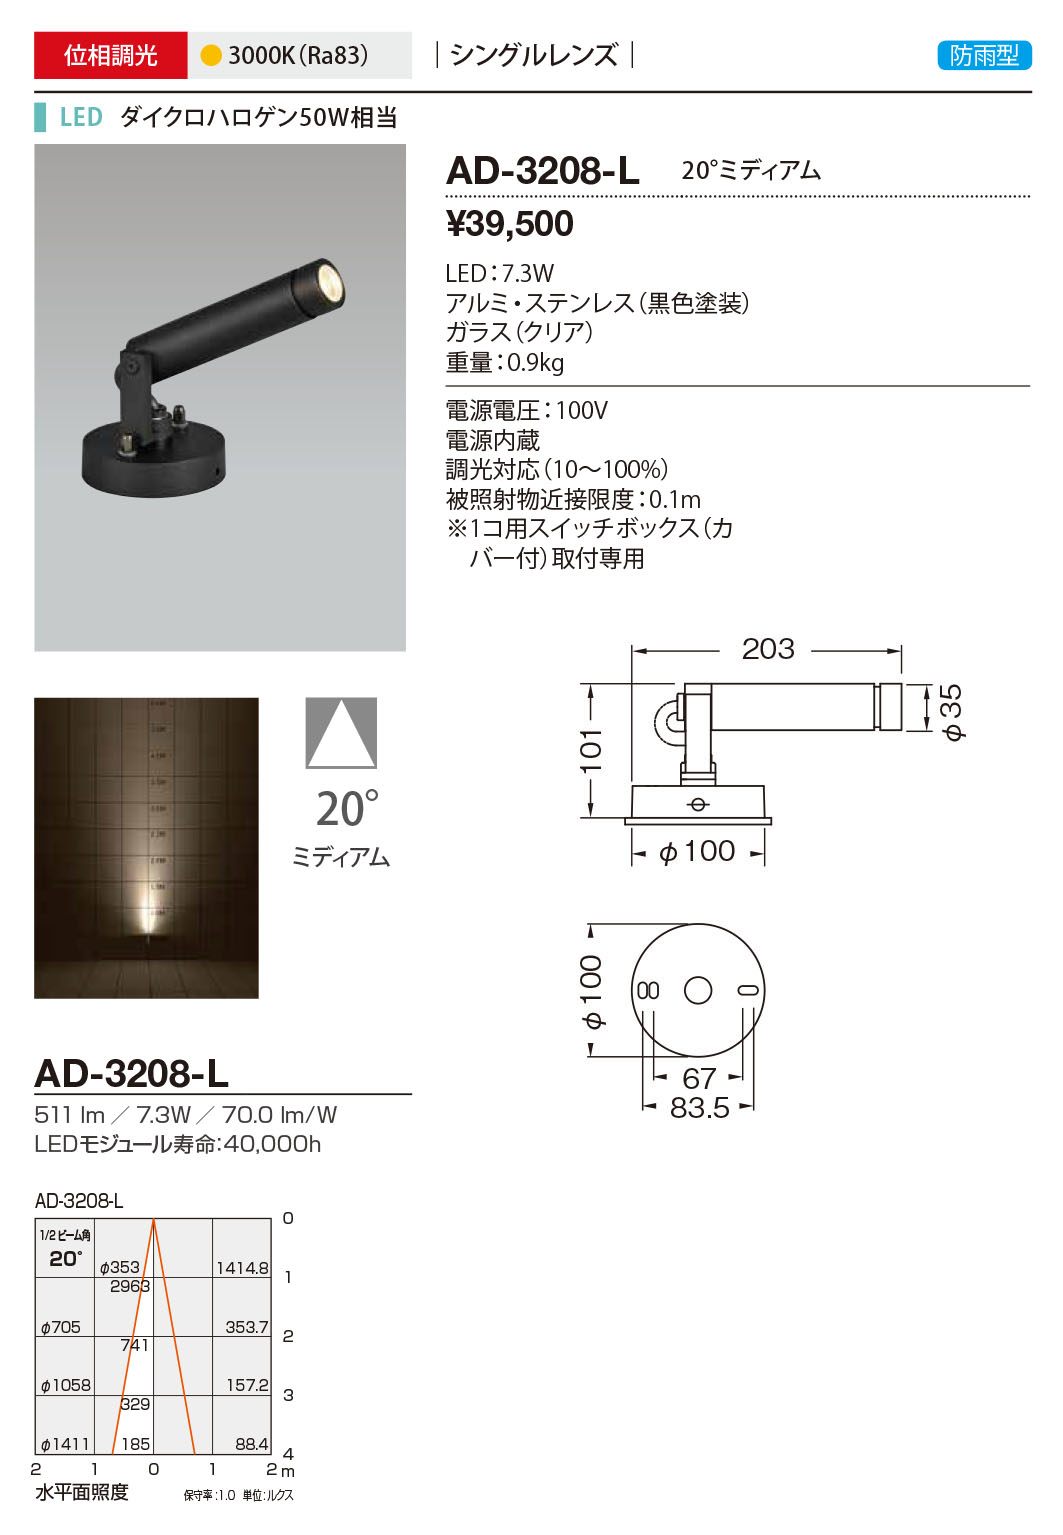 AD-3208-L RcƖ OX|bgCg F LED dF  20x